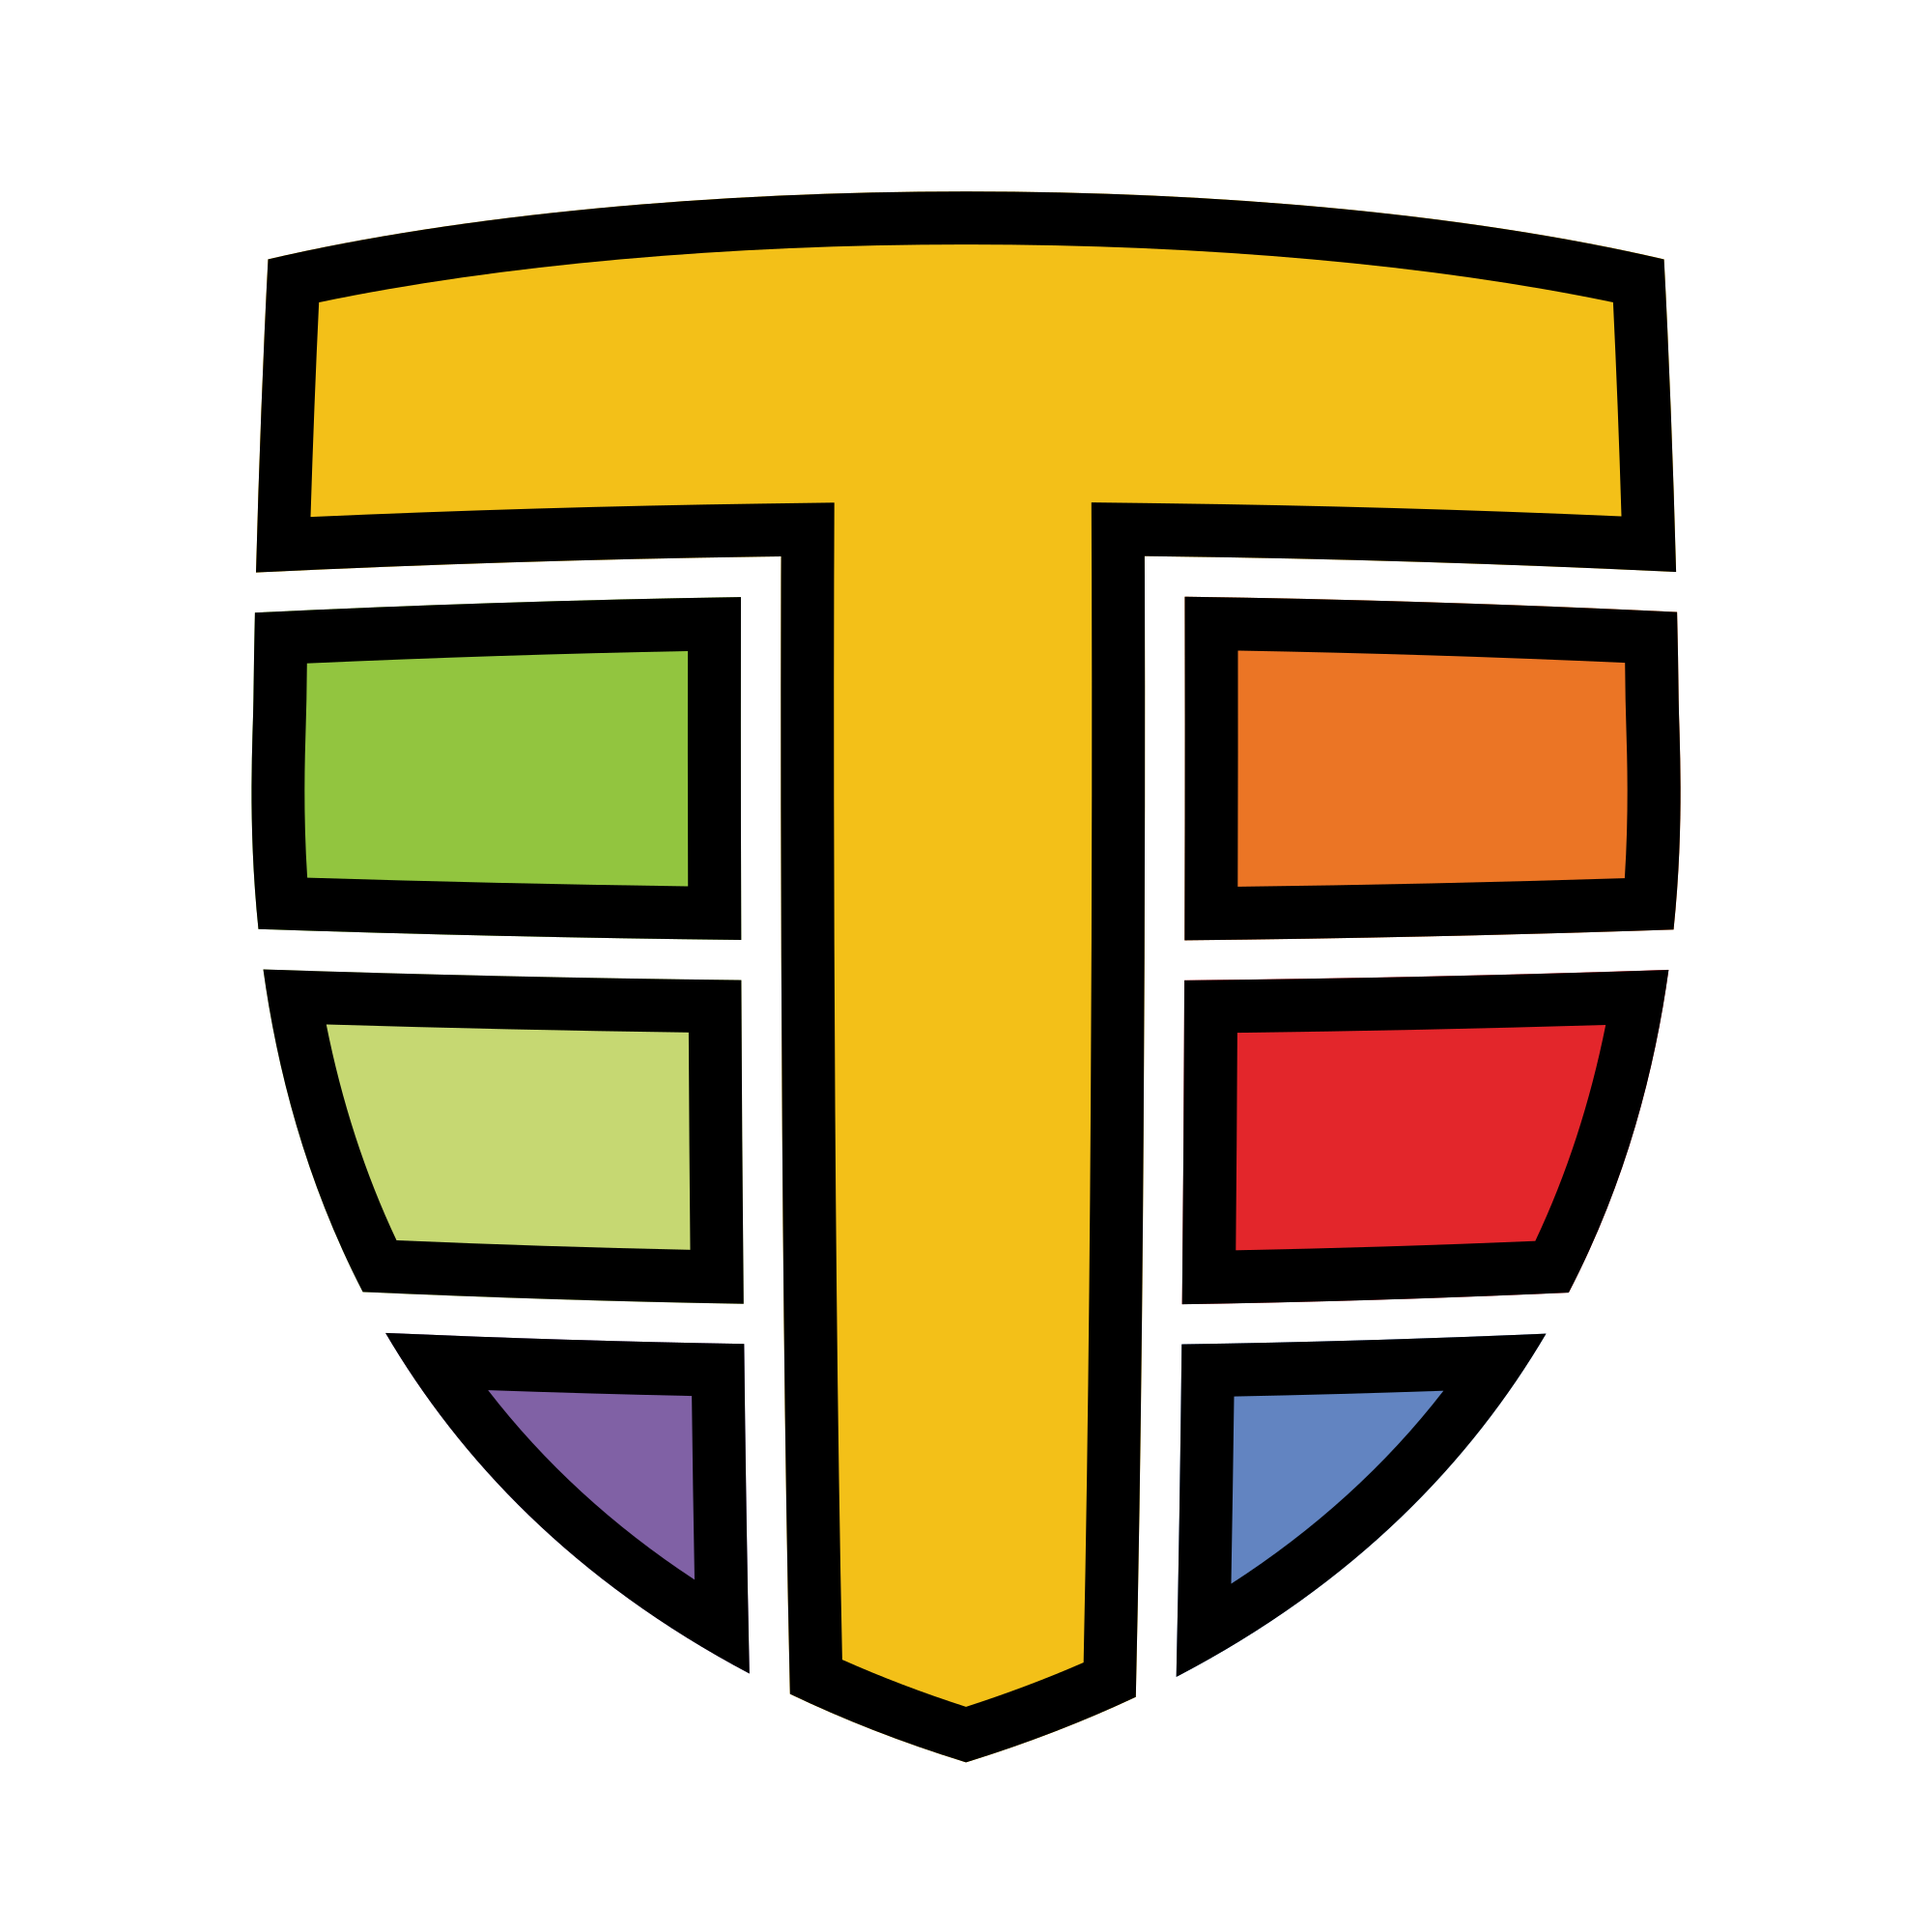 tetragon image logo